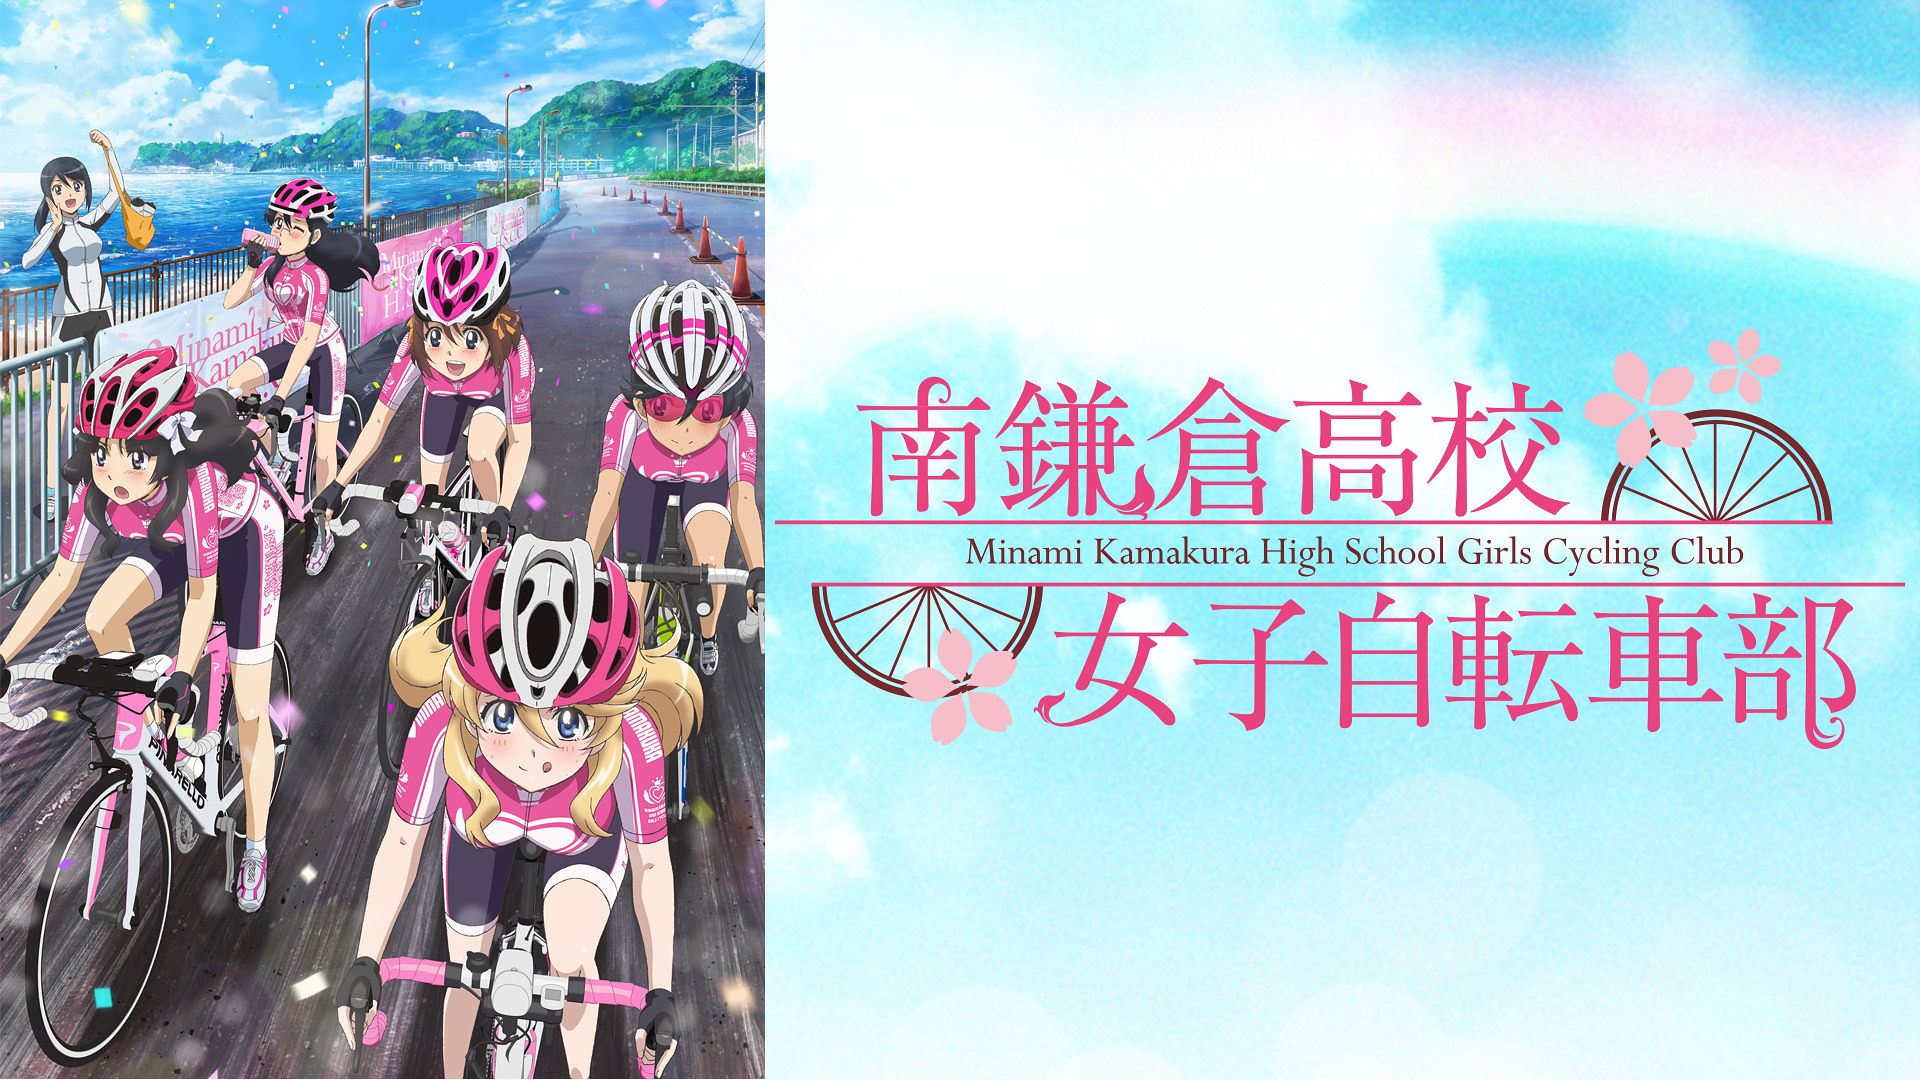 50 南鎌倉高校女子自転車部 壁紙 南鎌倉高校女子自転車部 壁紙